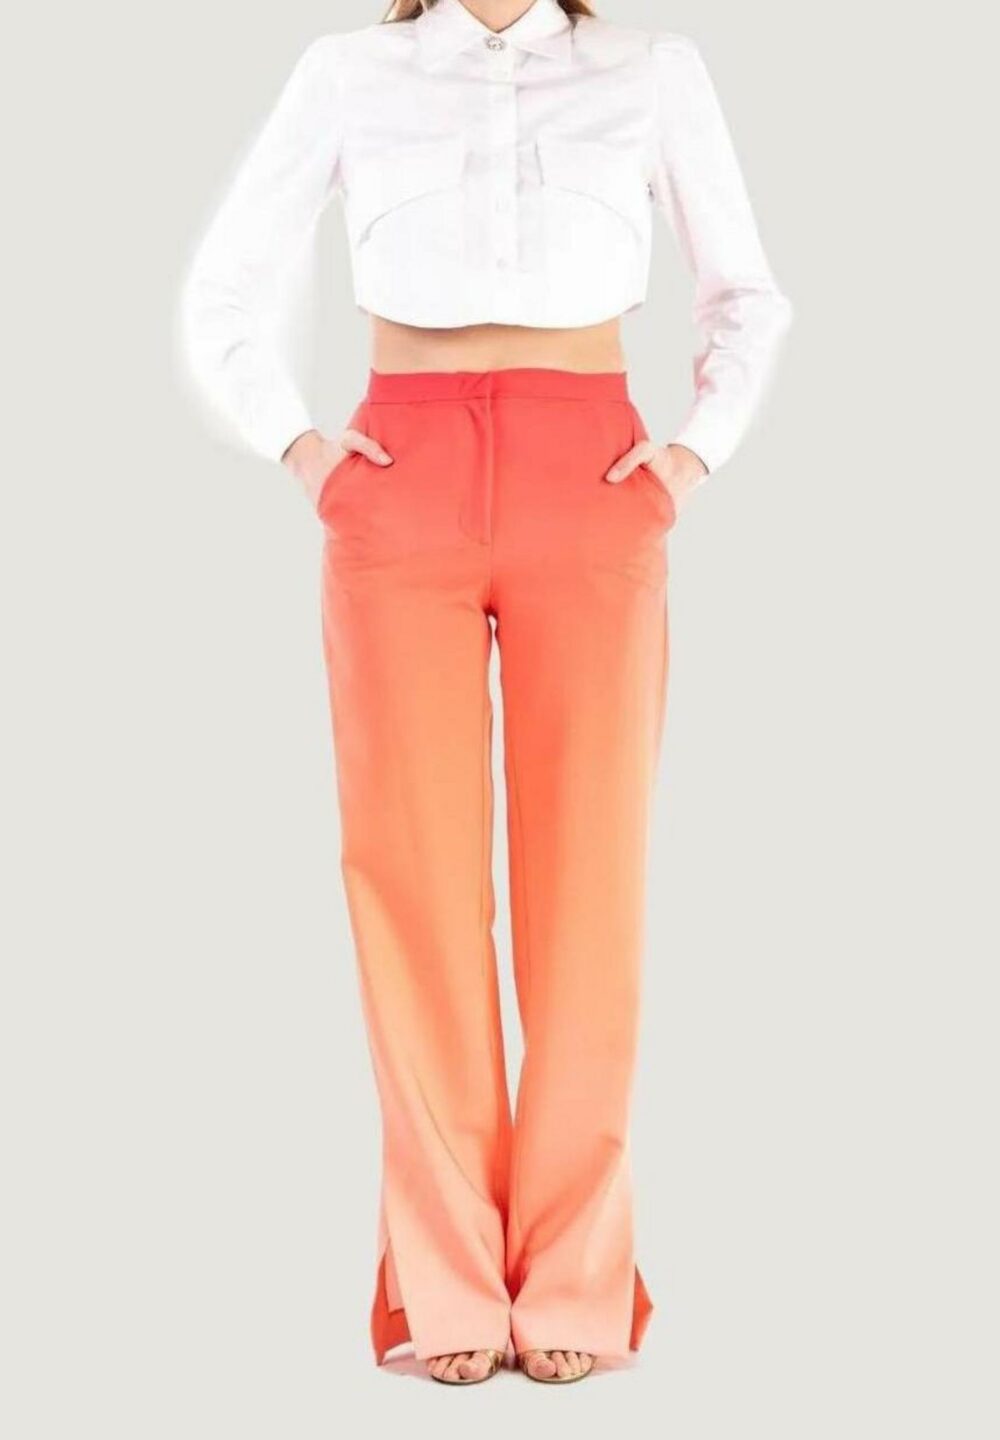 Pantaloni da completo Silence  Arancione - Foto 4